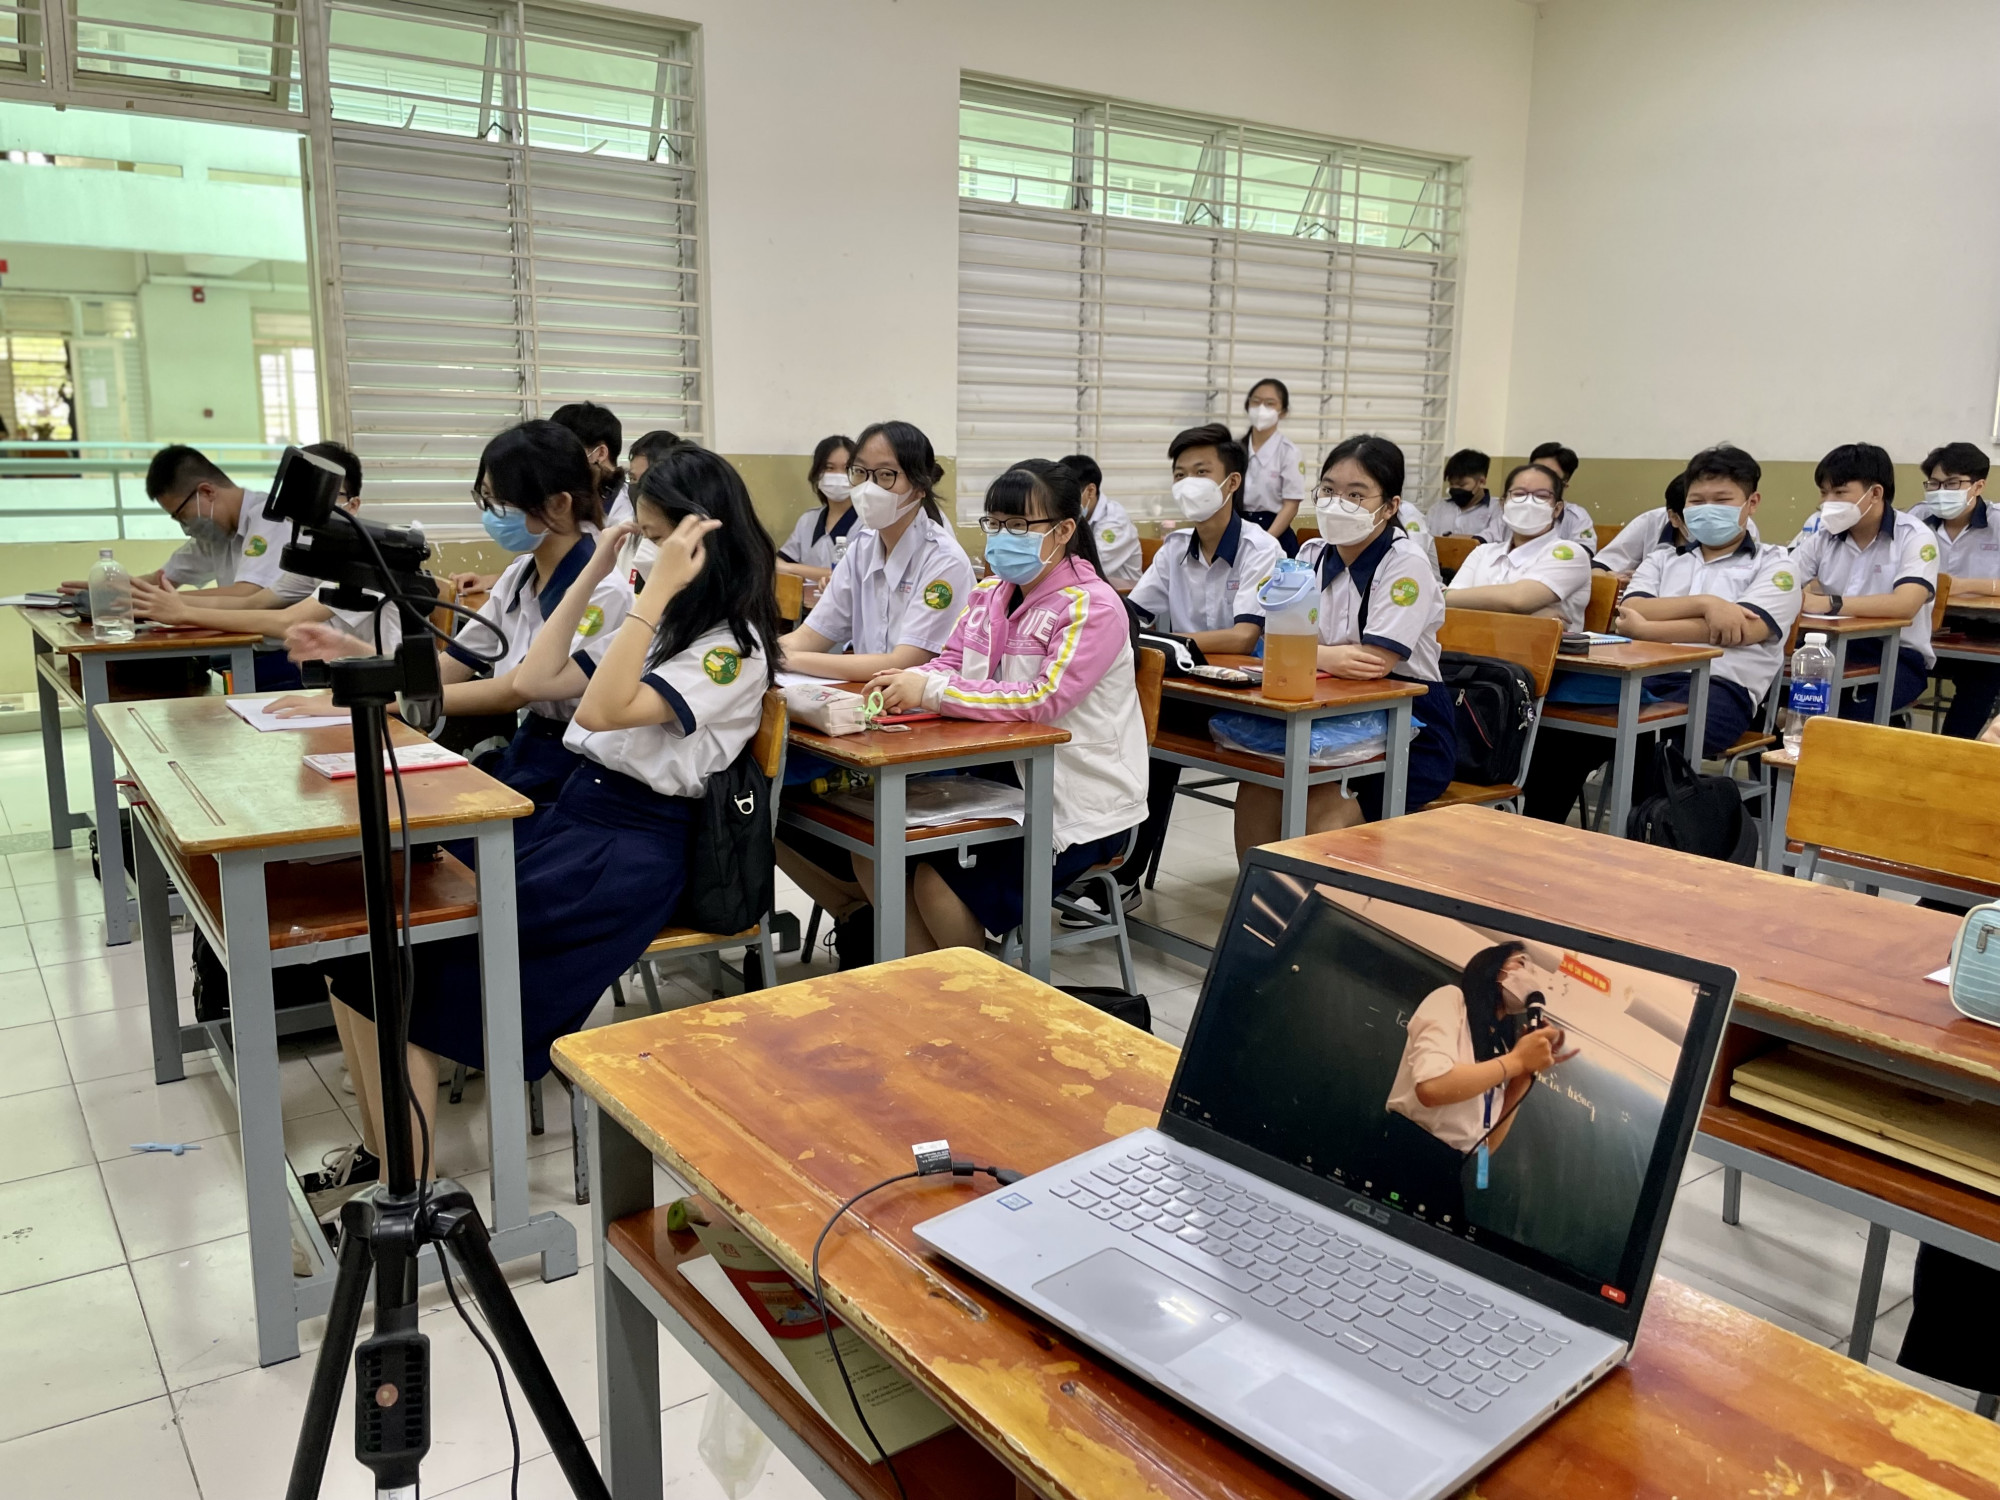 Chánh Văn phòng Sở GD-ĐT TPHCM Hồ Tấn Minh cho biết, tới đây TPHCM sẽ không tổ chức các lớp học trực tuyến xuyên suốt như trước đây